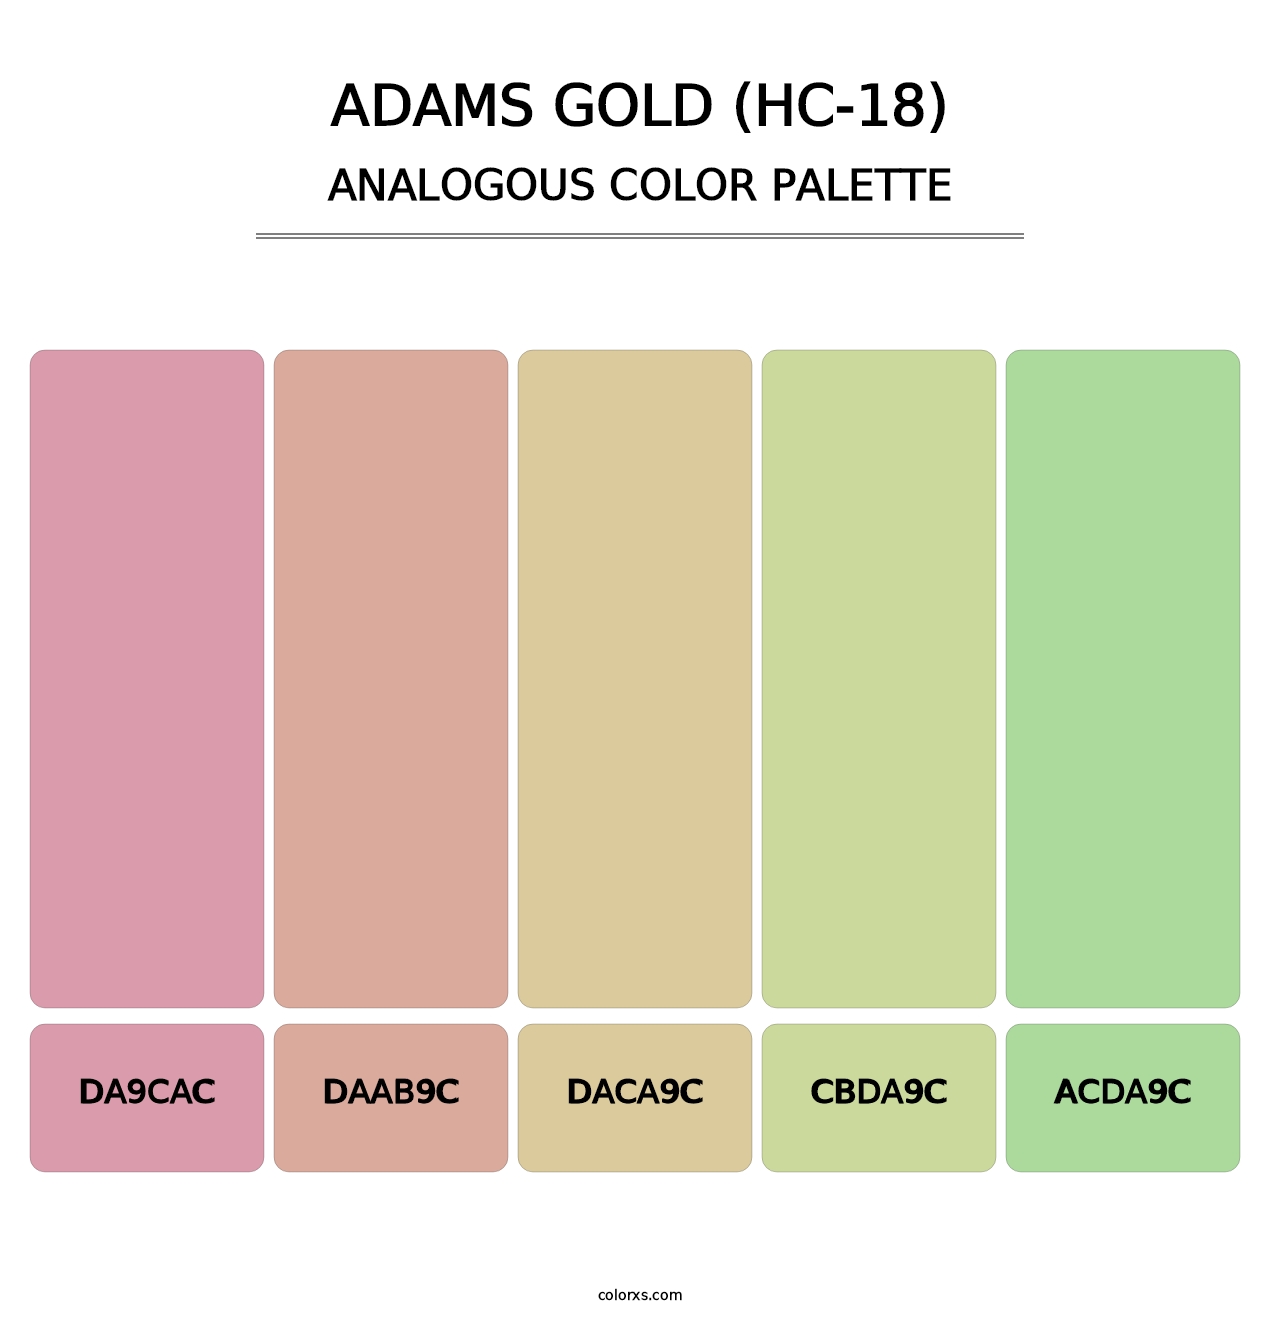 Adams Gold (HC-18) - Analogous Color Palette